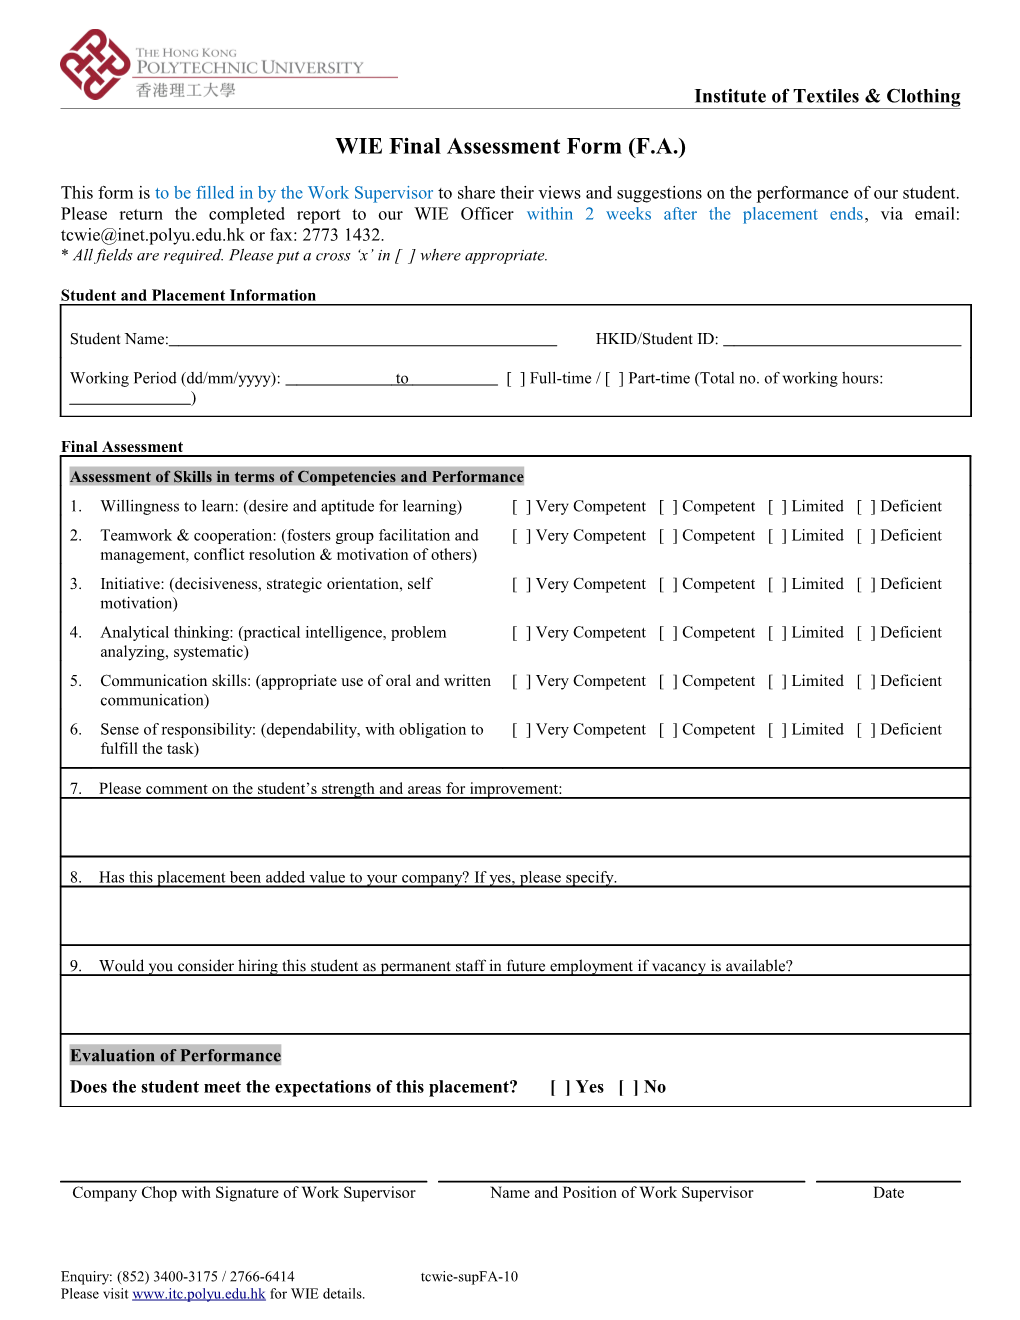 WIE Final Assessment Form (F.A.)